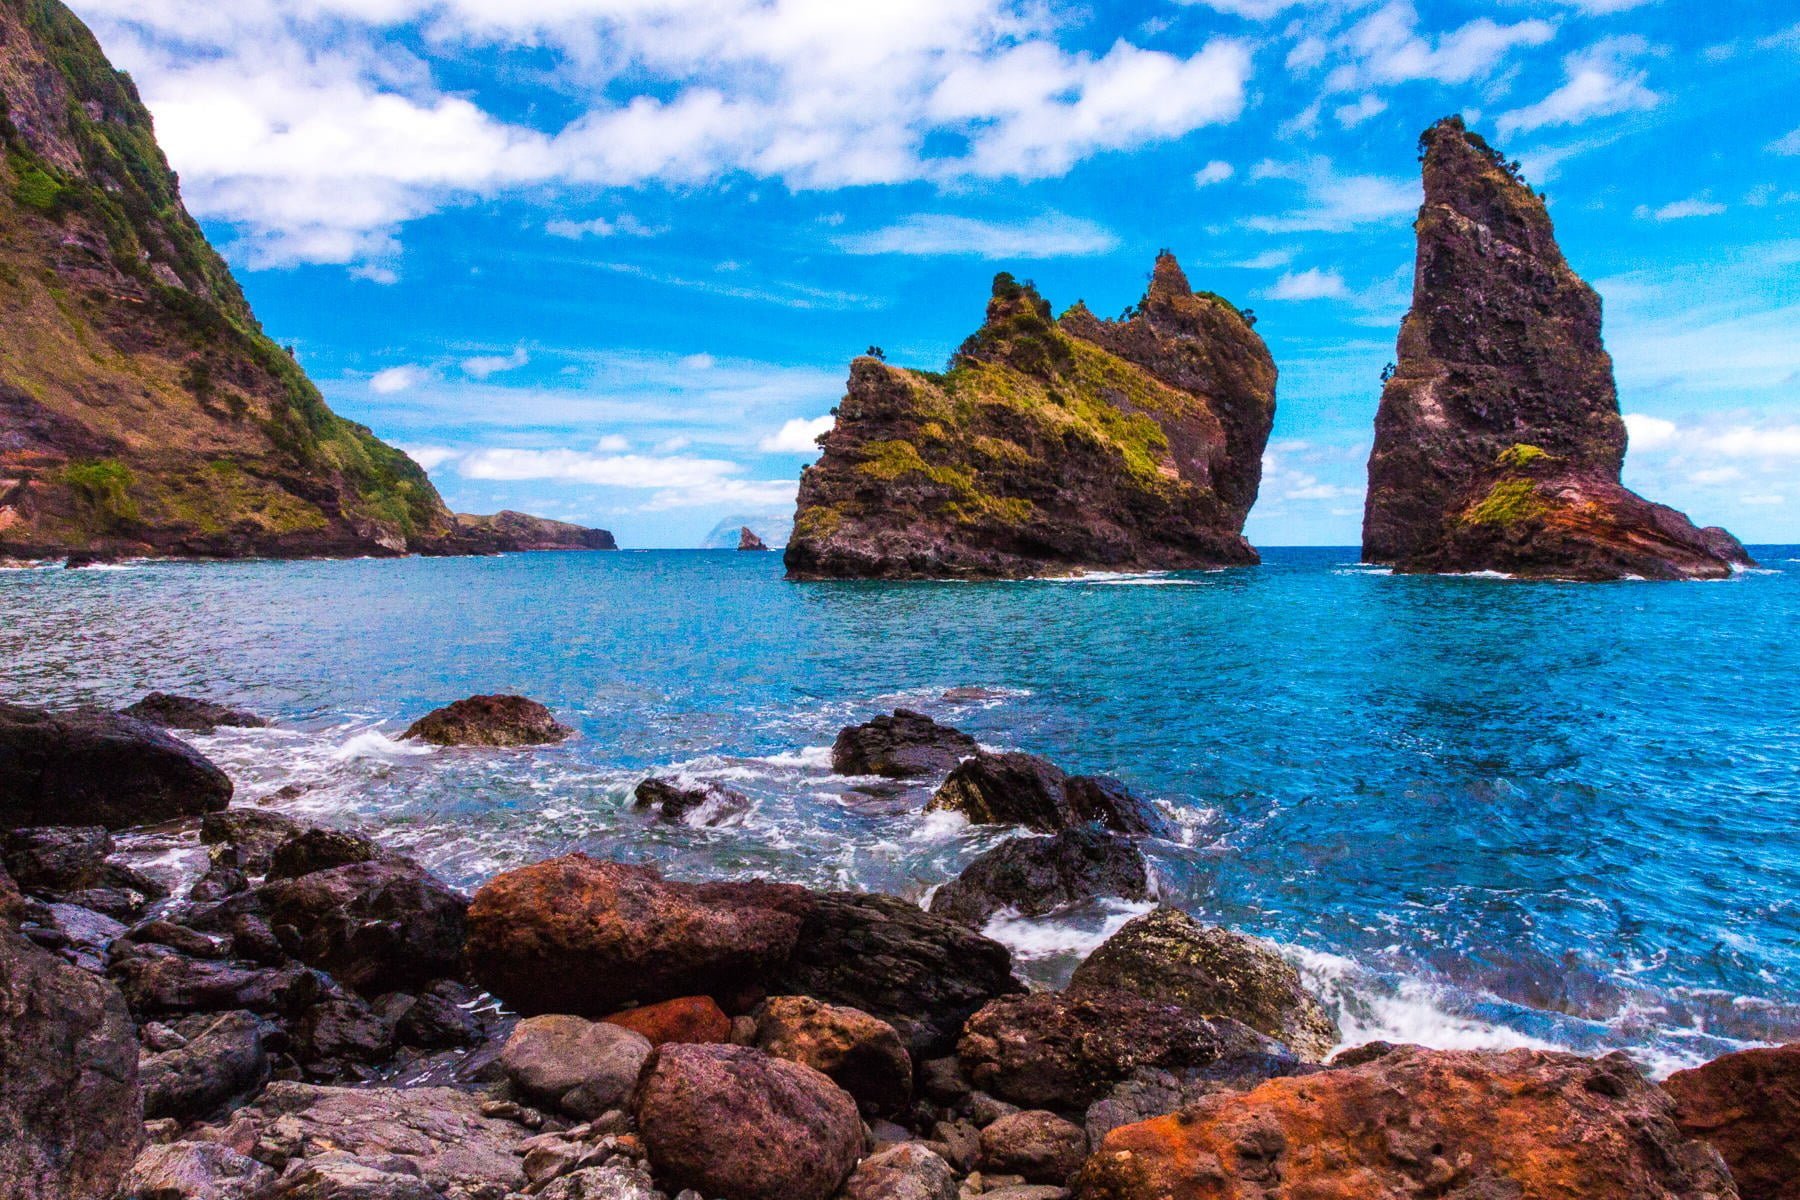 Lire la suite à propos de l’article L’Aventure selon SEAL, épisode 20 : Baleines, dauphins, fleurs et volcans dans l’archipel des Açores